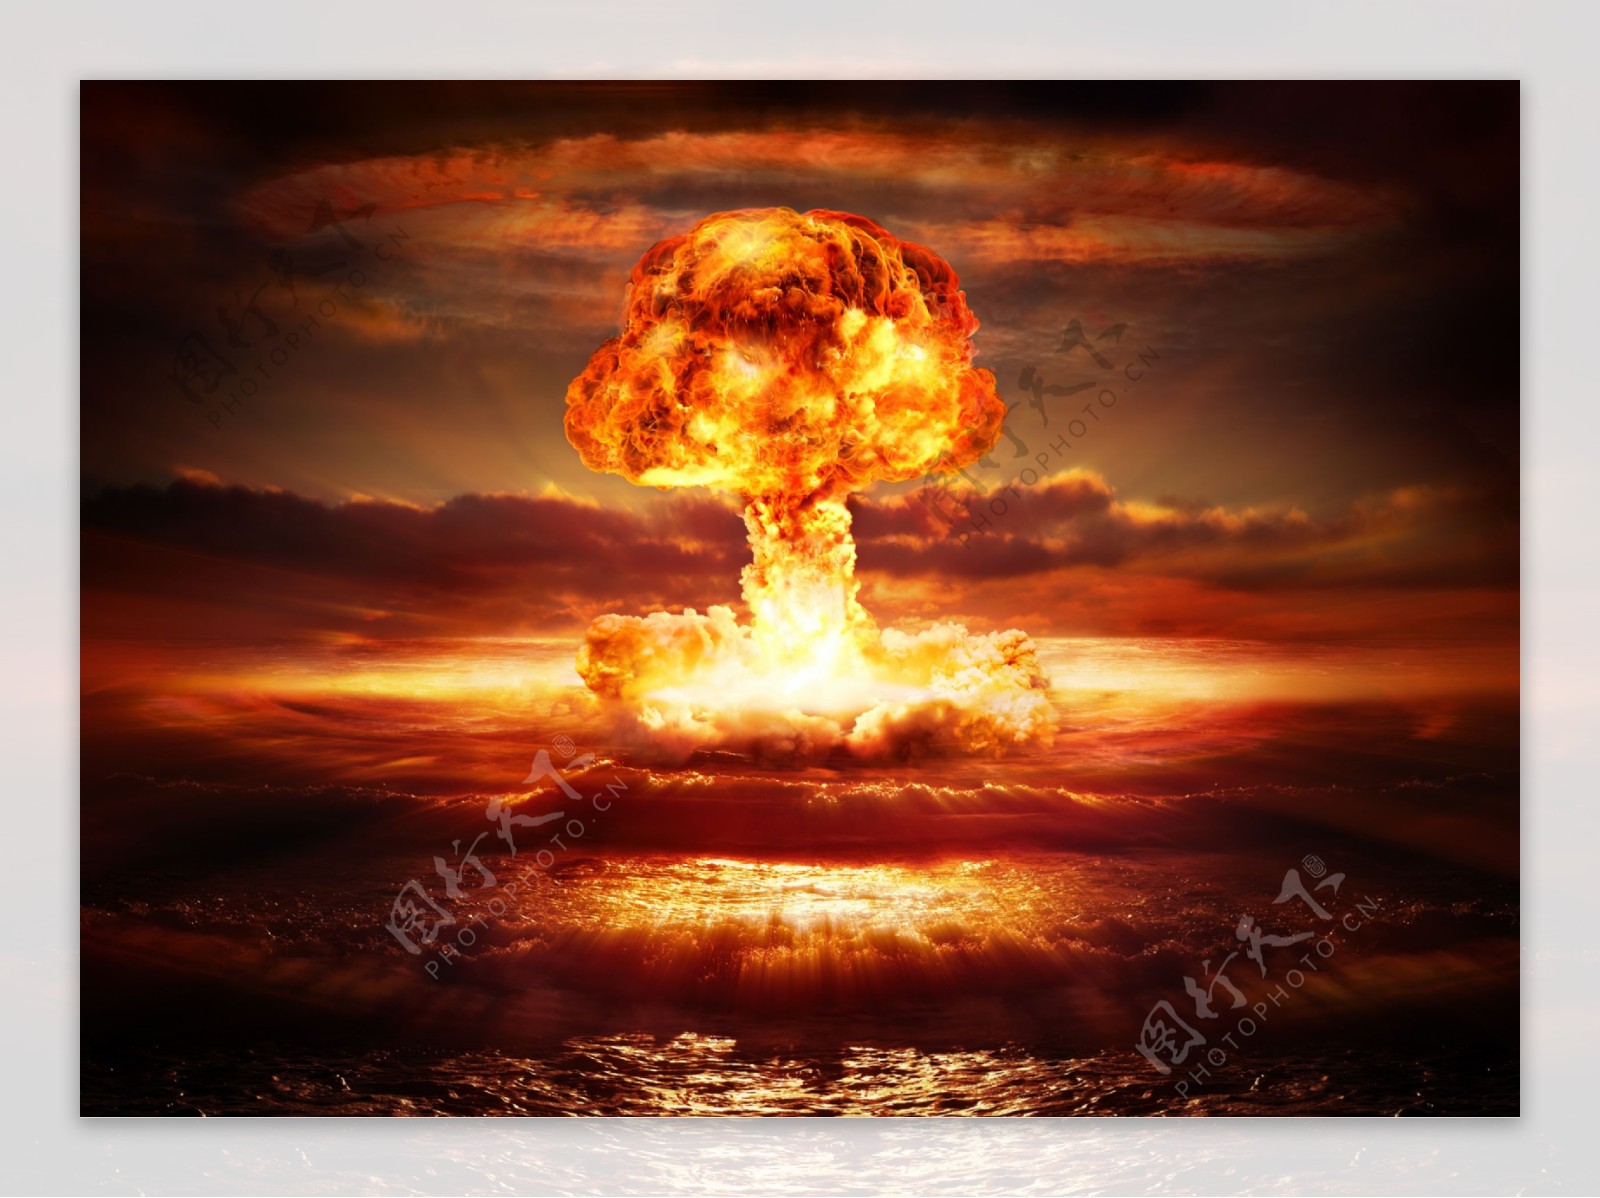 海洋原子弹爆炸图片